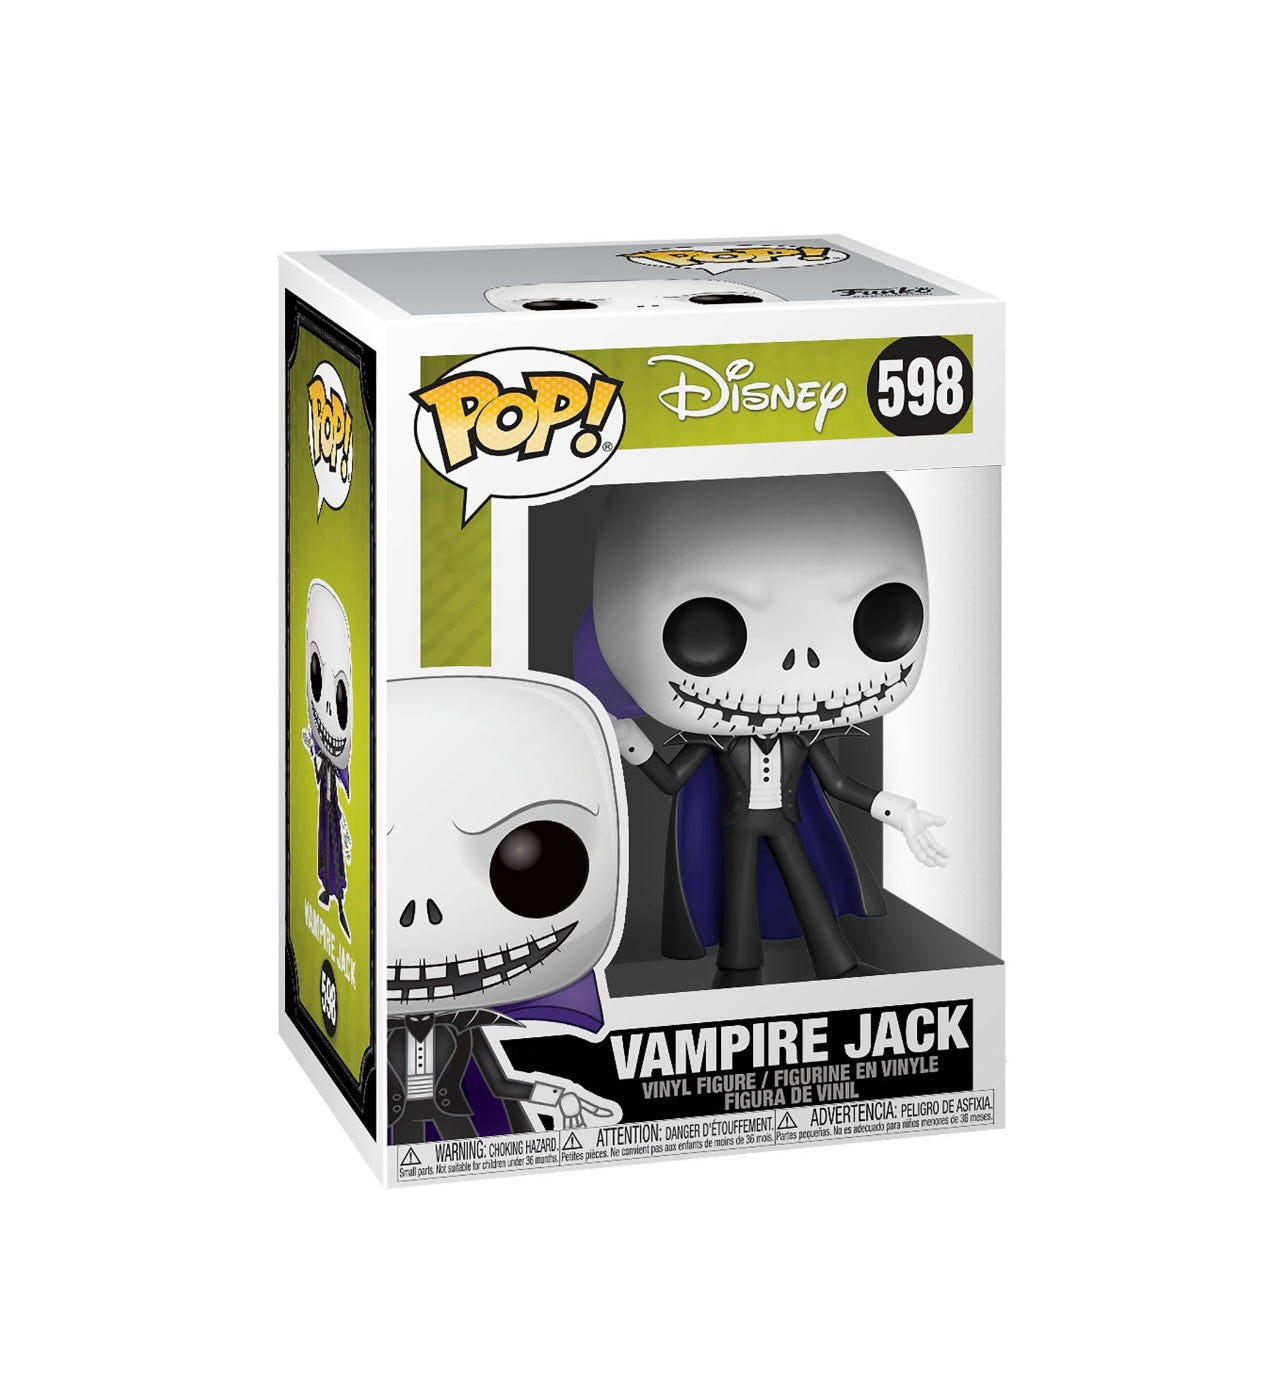 POP! Disney NBC Vampire Jack #598